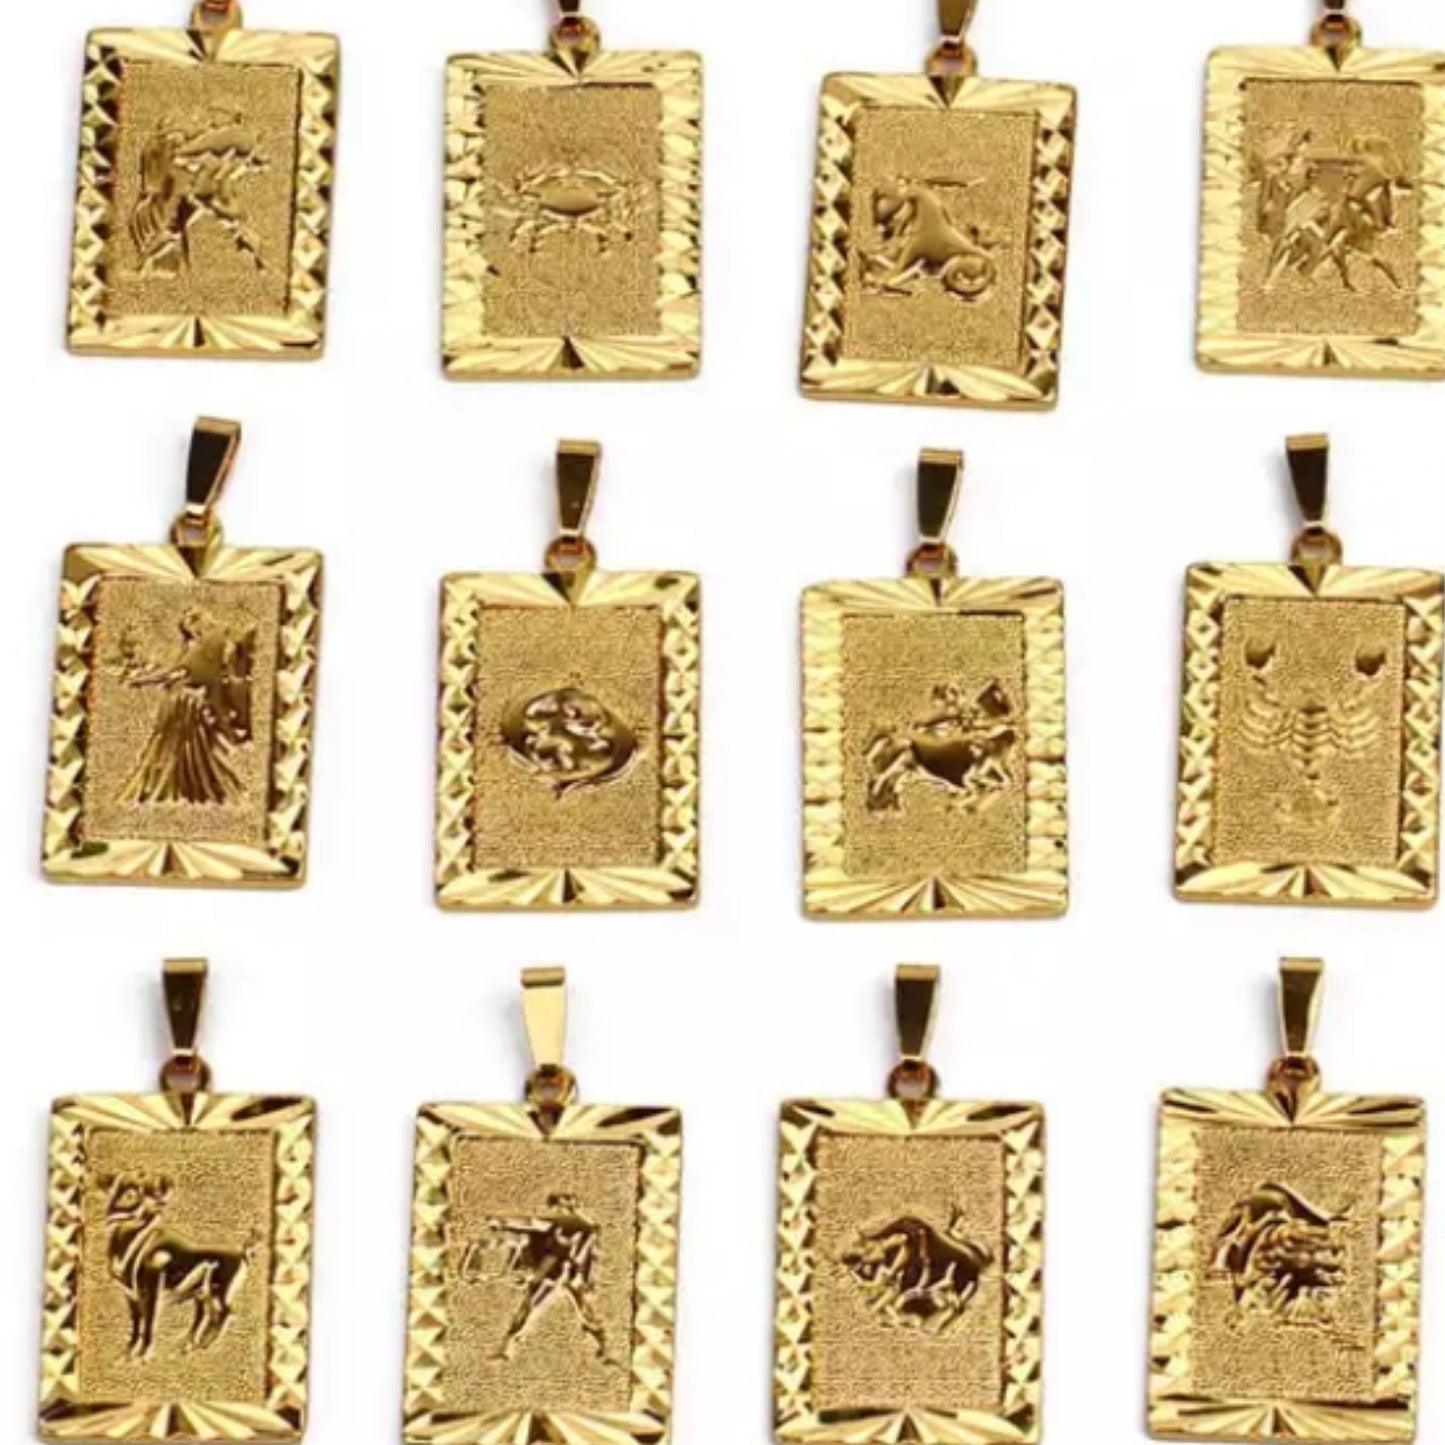 24k gold plated horoscope pendant